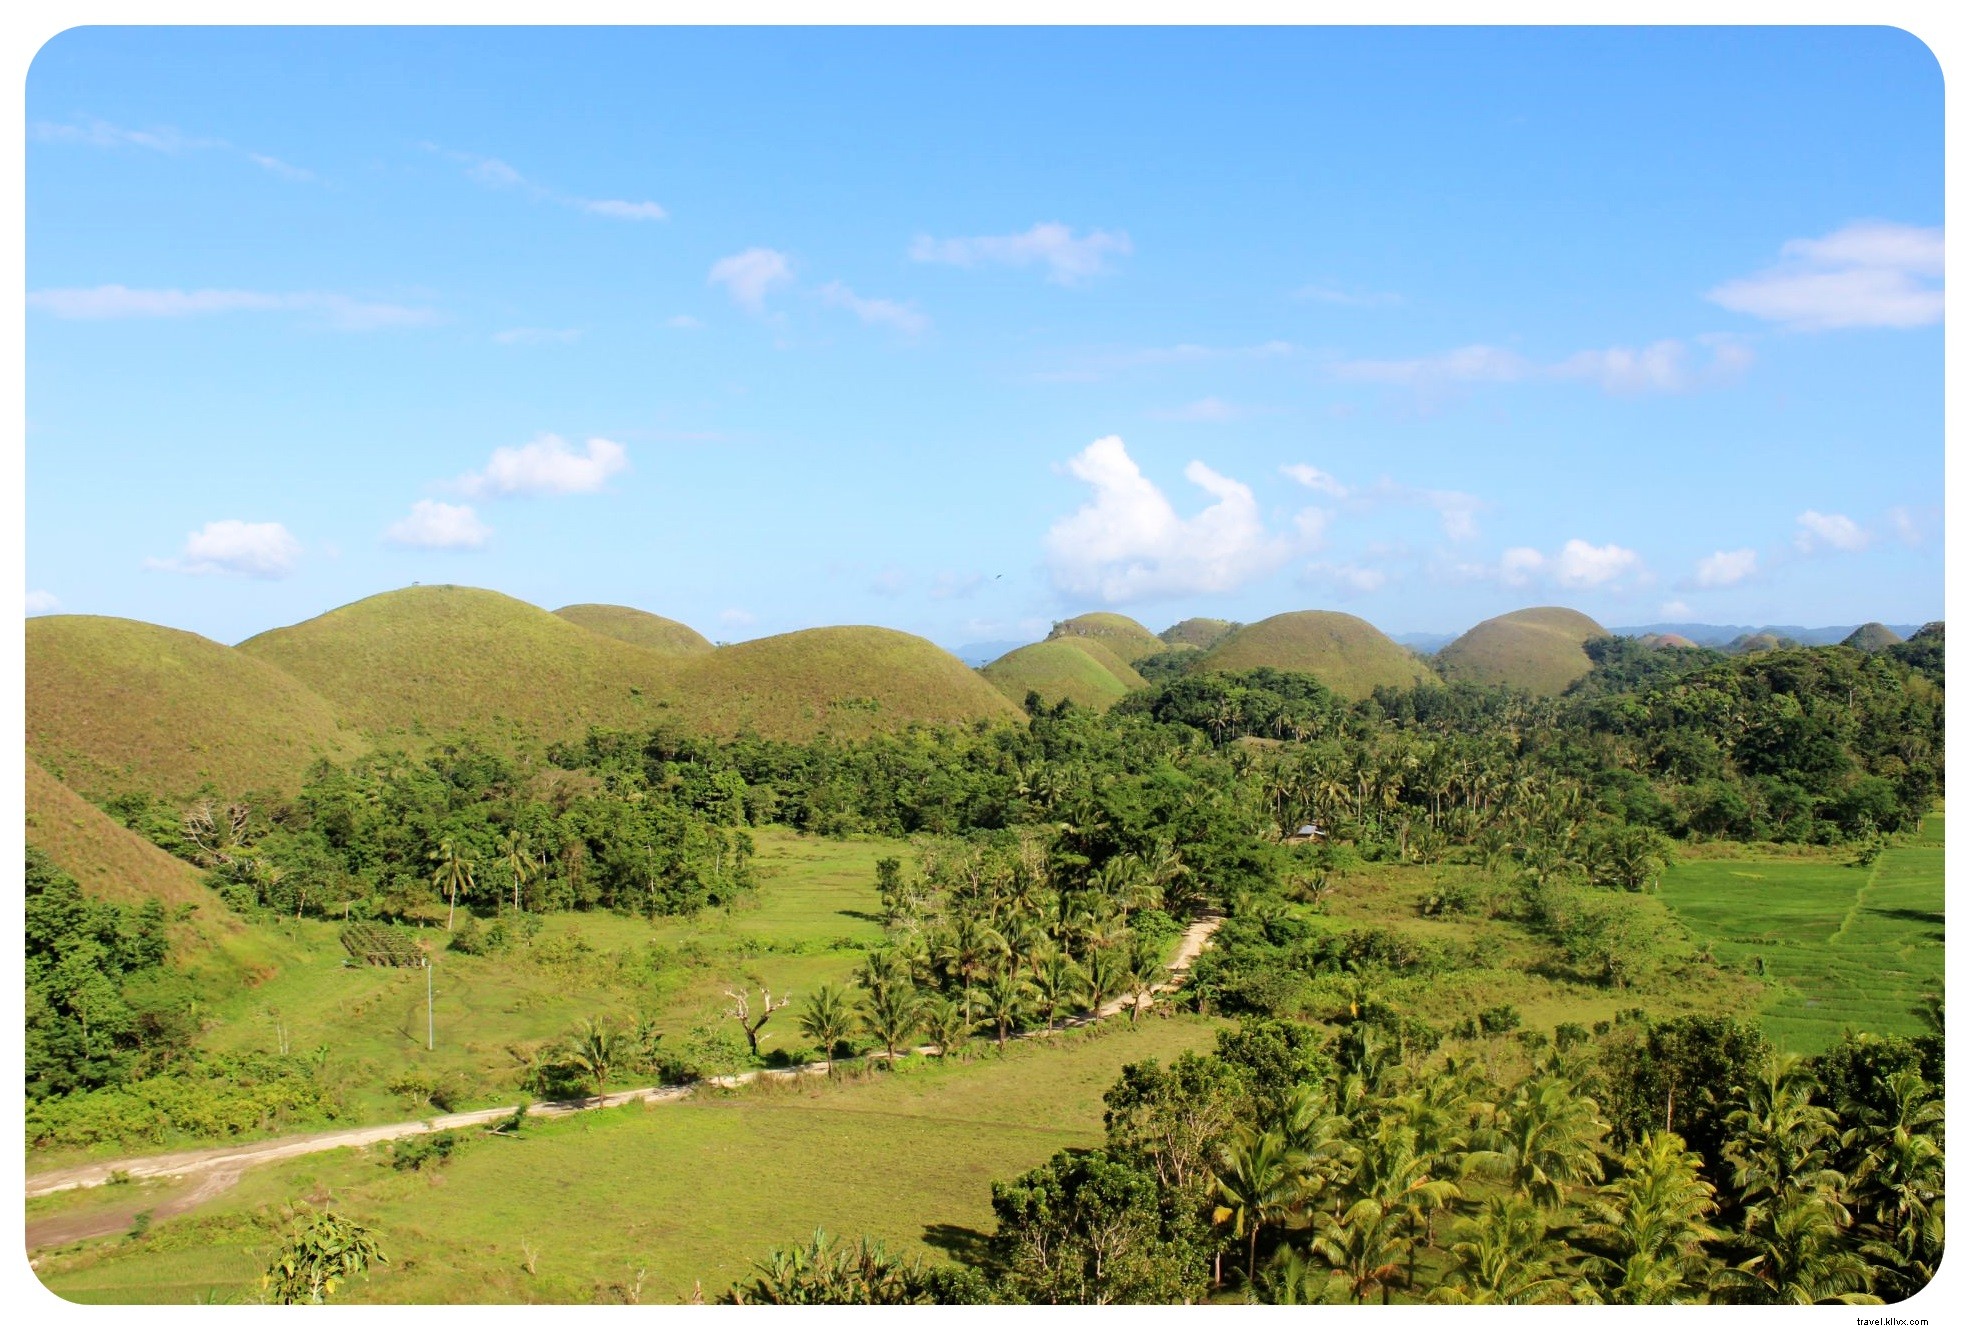 ボホール島のメガネザルとチョコレートの丘|フィリピン